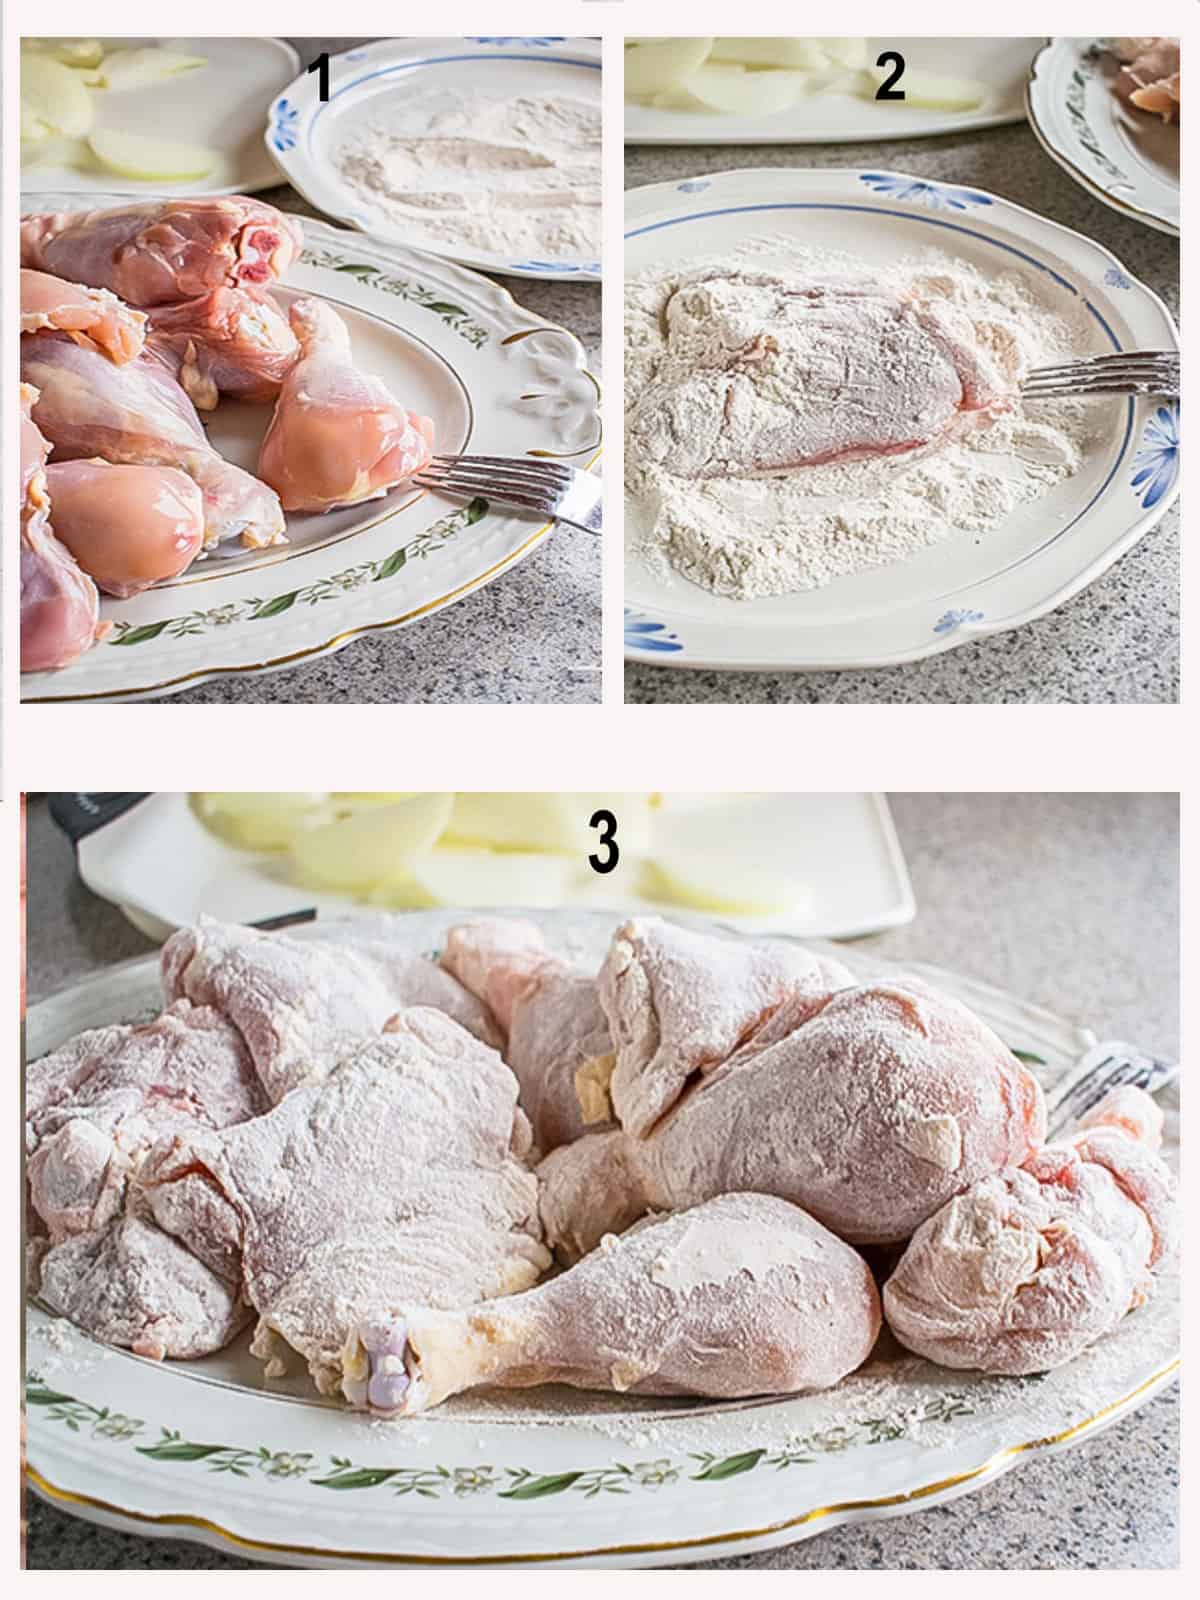 raw chicken, flouring piece of chicken, platter of floured chicken